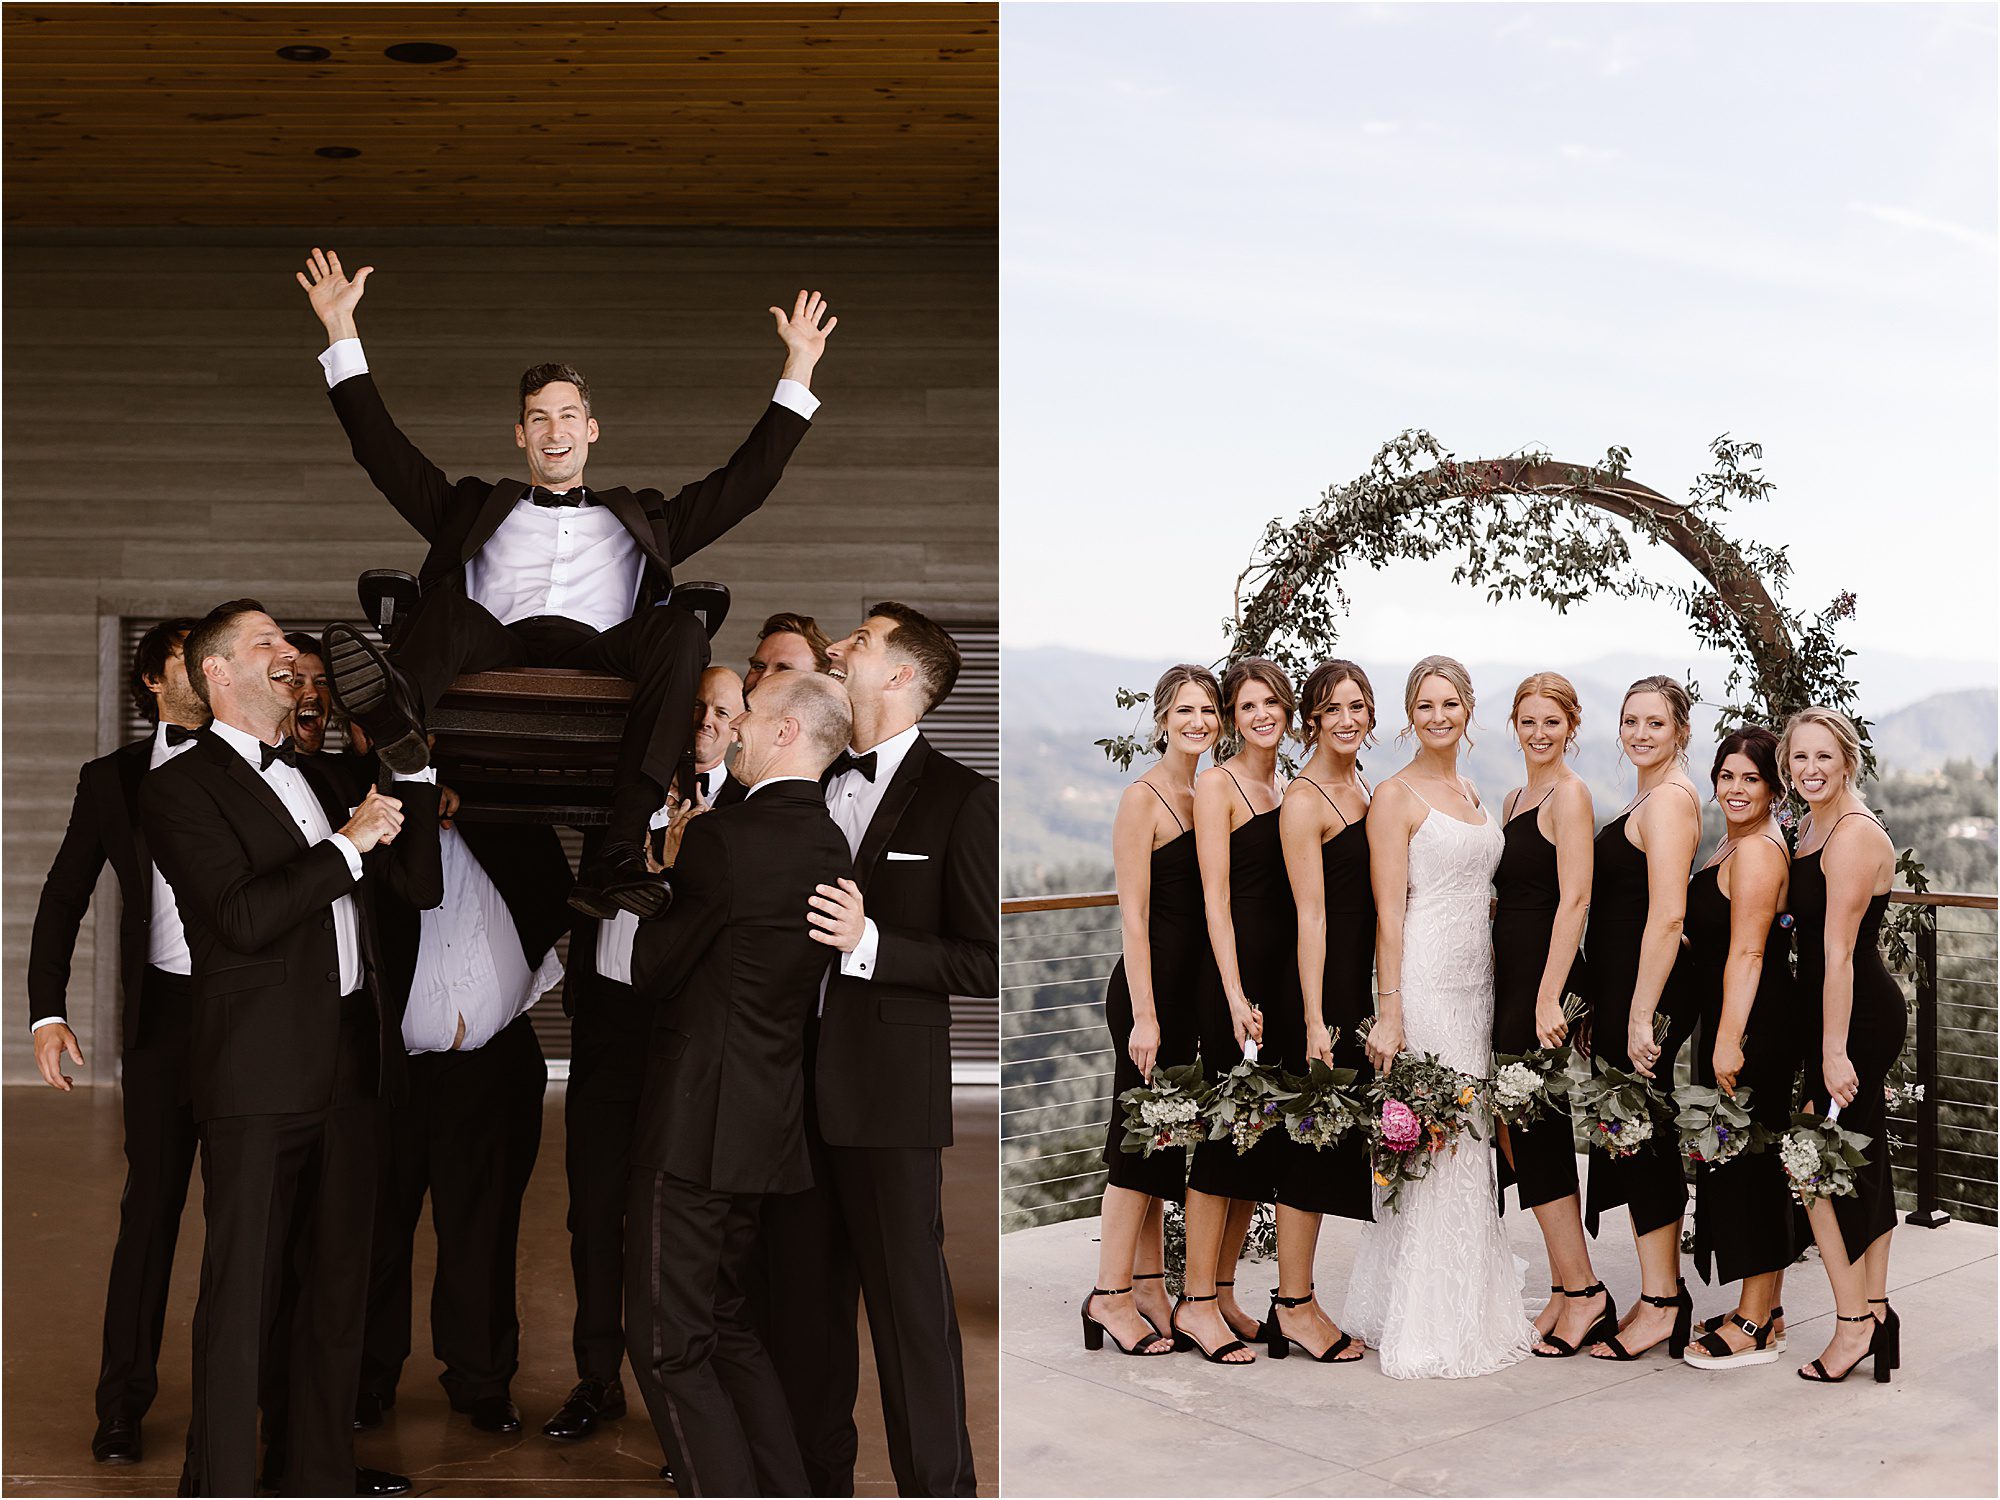 fun wedding party photos with bride and groom in black-tie formalwear 